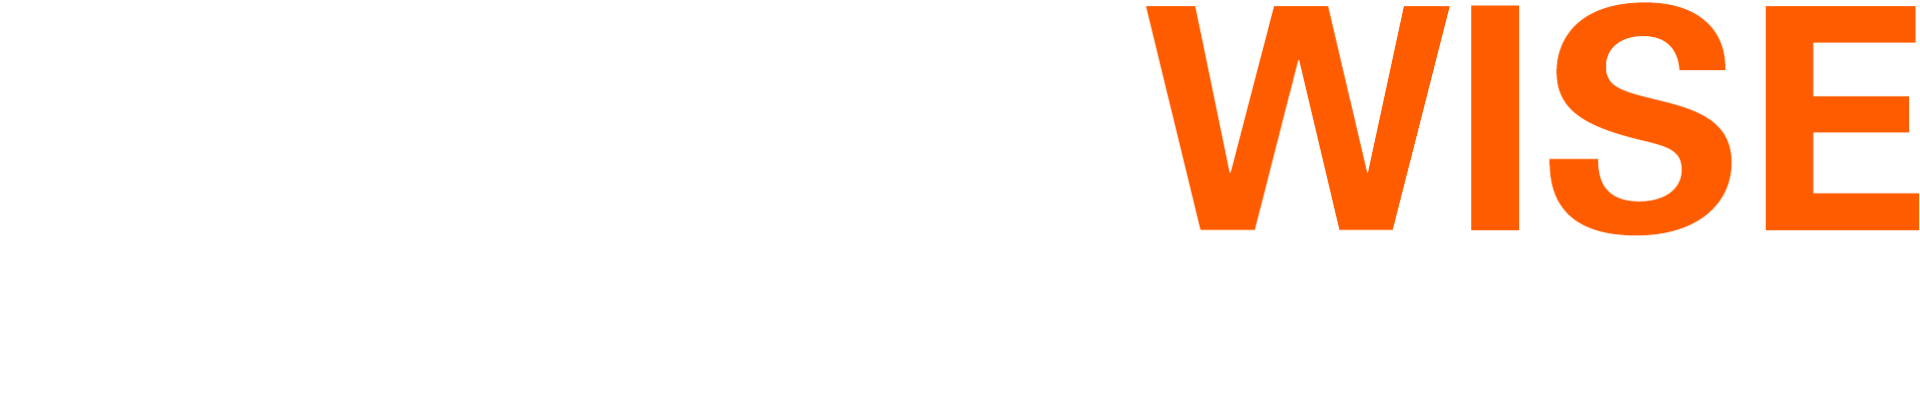 Healthwise Creative logo reversed.